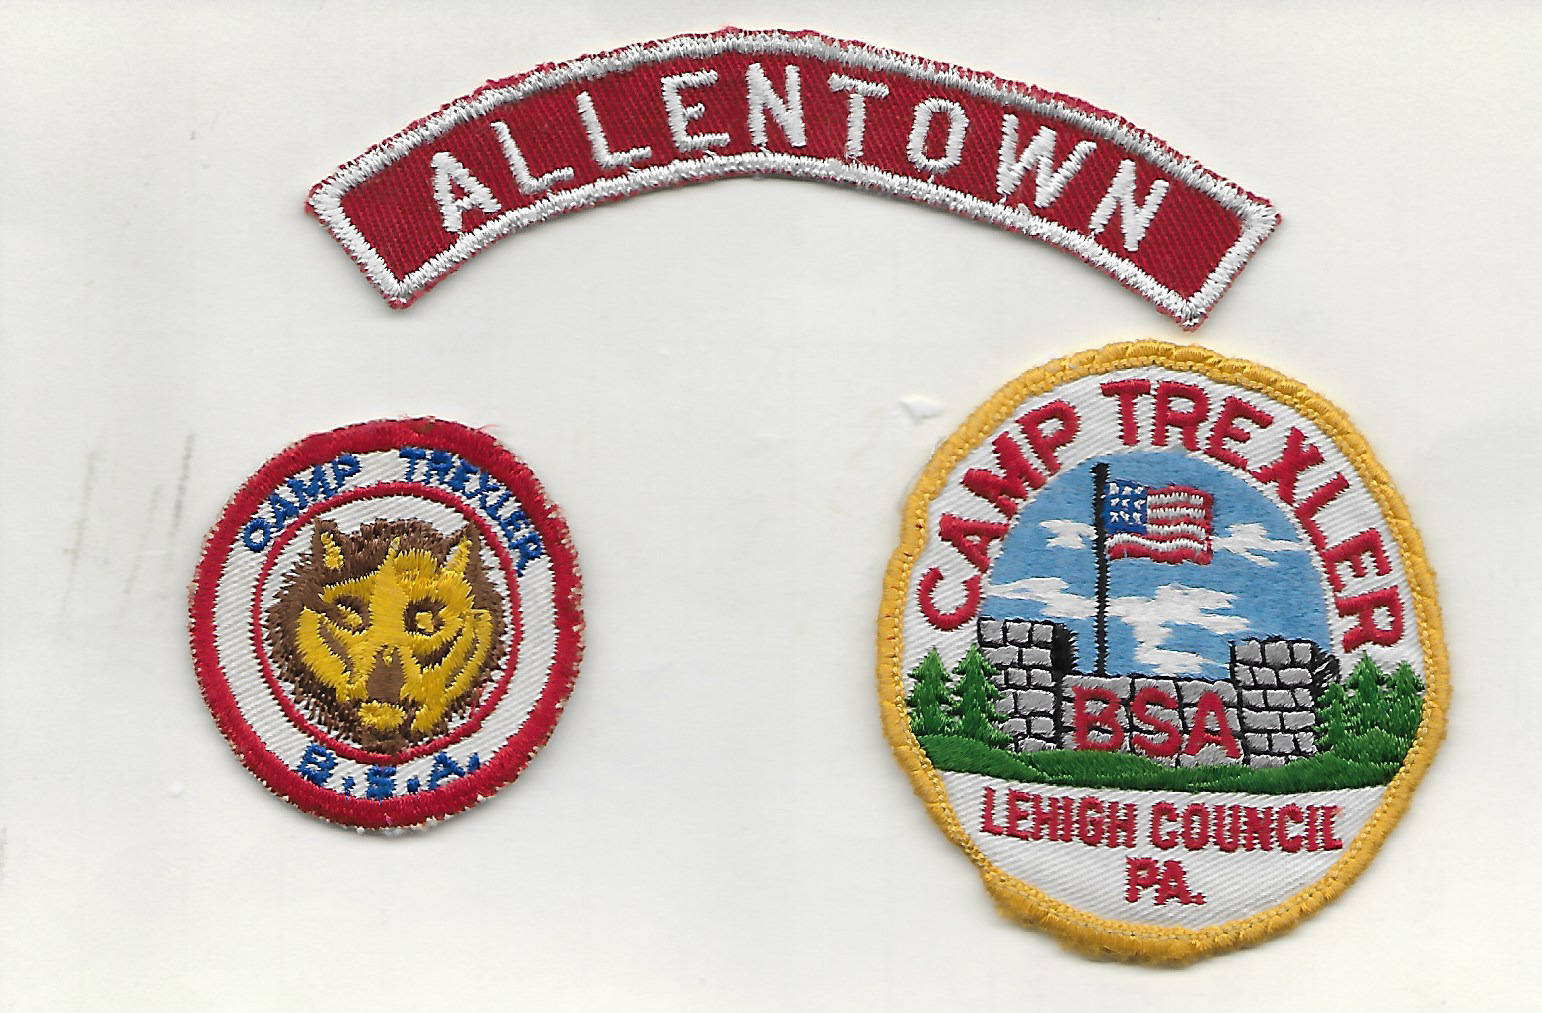 Allentown Strip & 2 Old Camp Trexler Patches